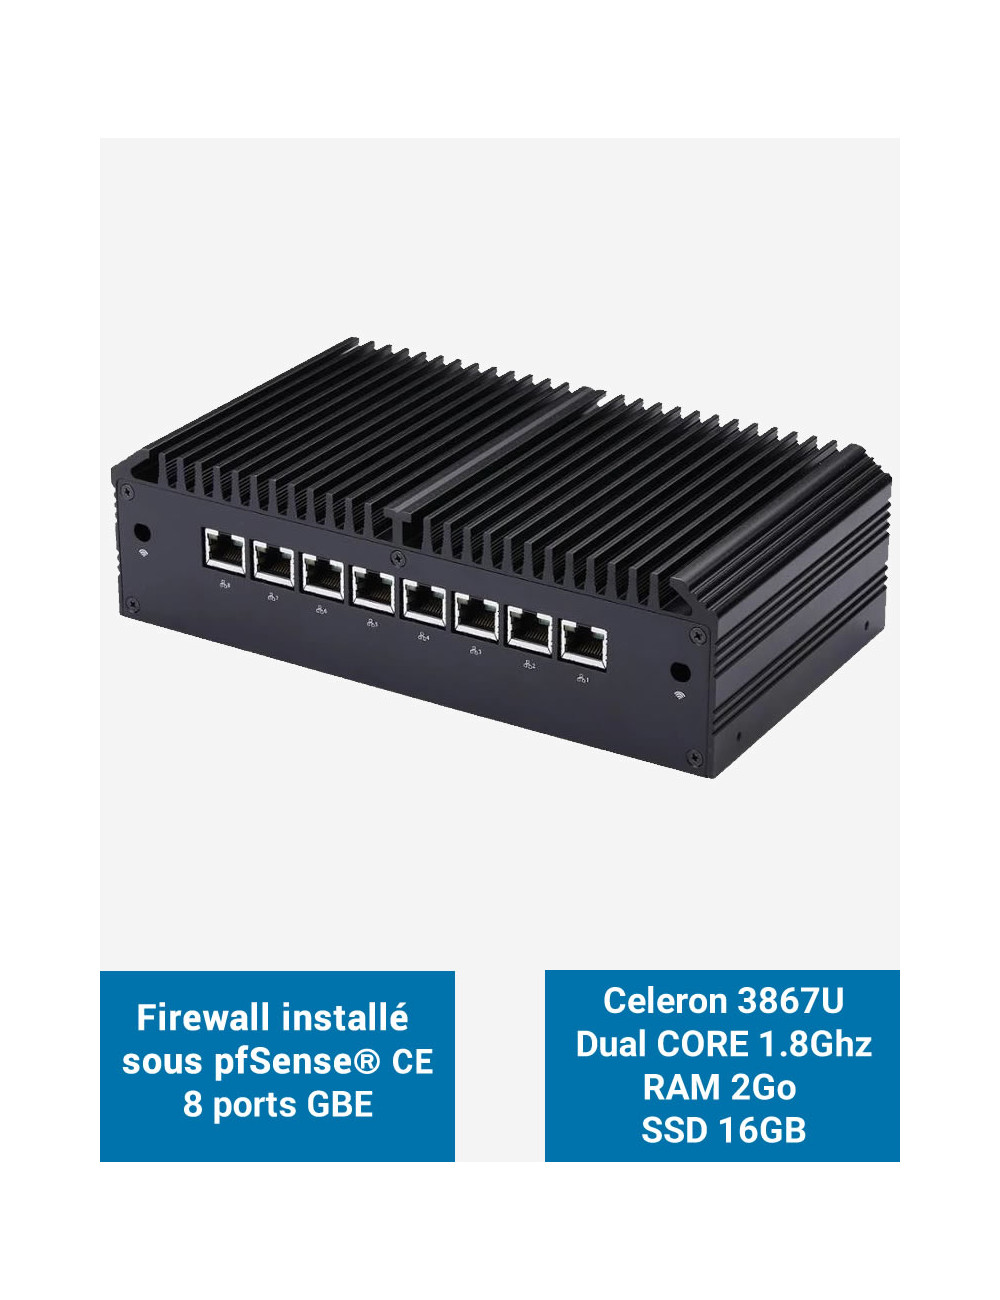 Firewall Q8x Celeron 3867U 8 ports GbE 2GB 16GB